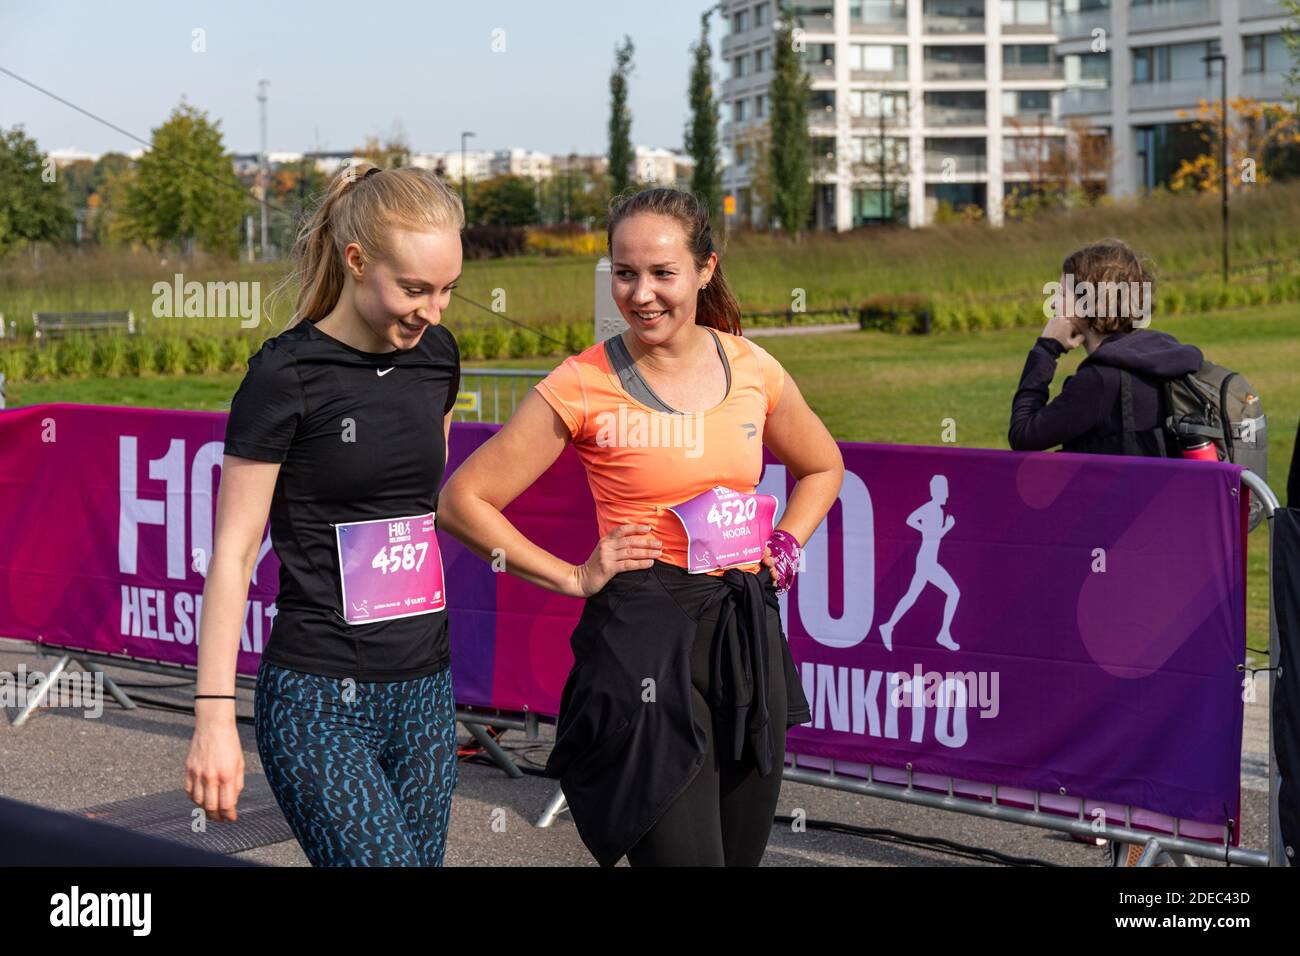 Junge Frauen nach dem Überqueren der Ziellinie des Helsinki10- oder H10-Laufwettbewerbs in Helsinki, Finnland Stockfoto